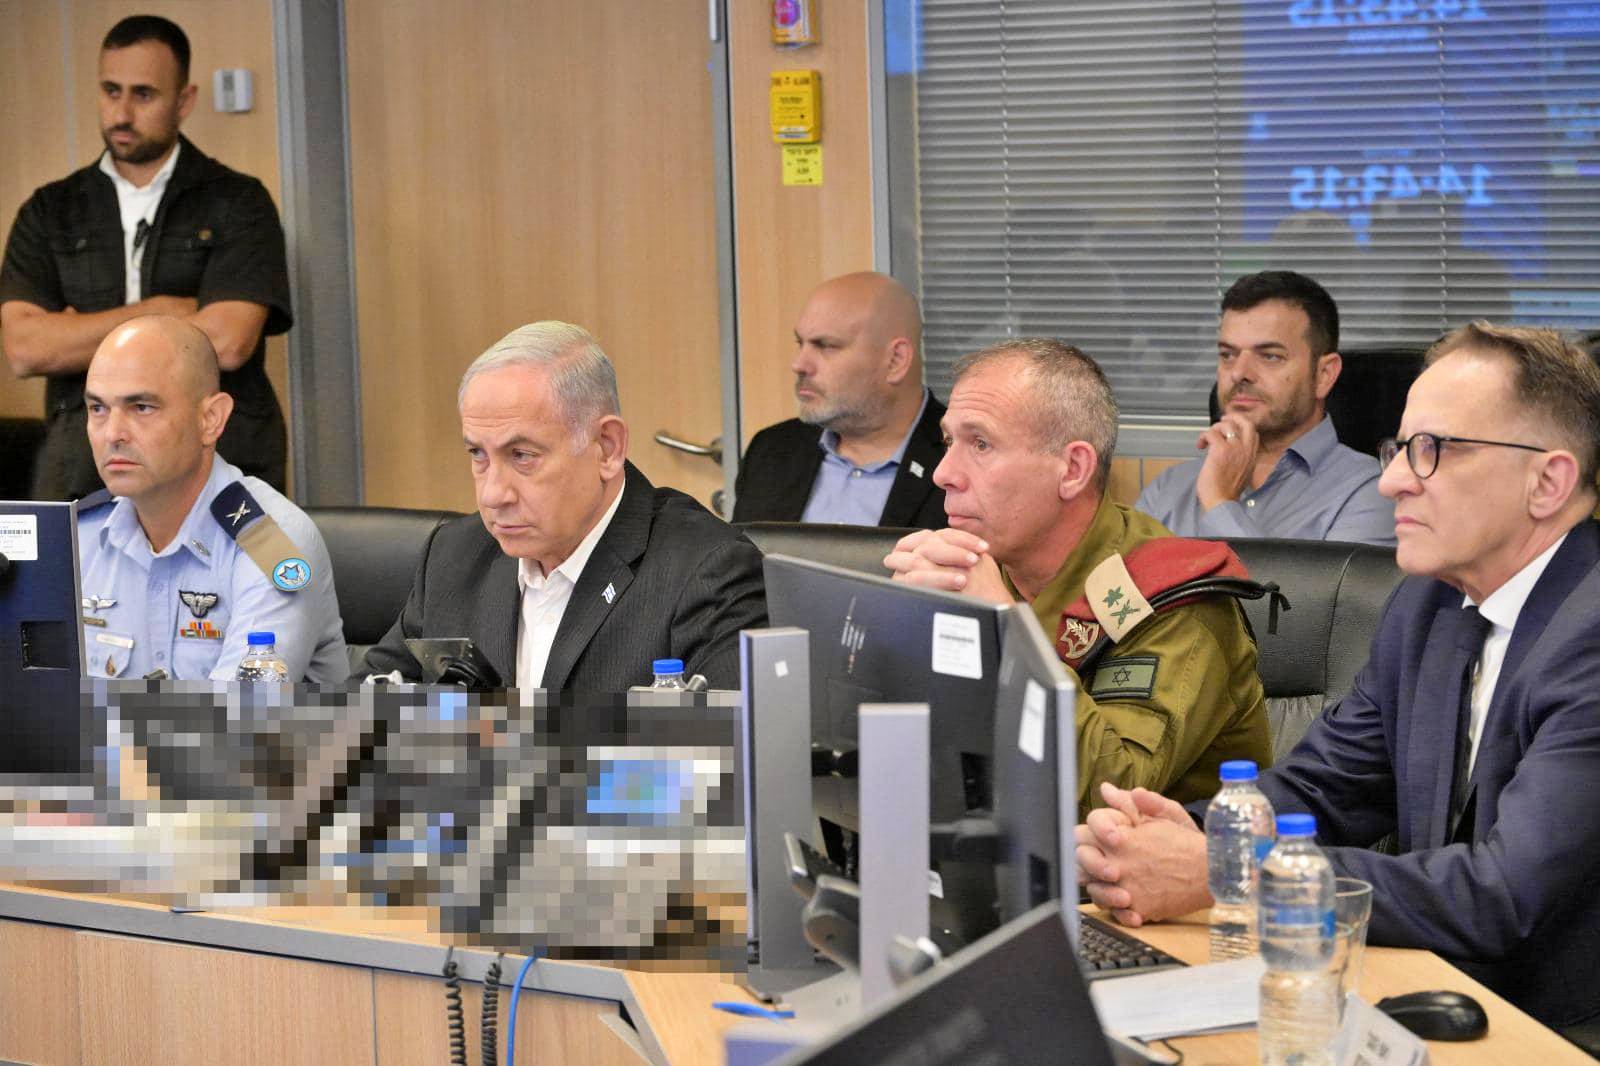 Benjamin Netanyahu Anunturi ULTIMA ORA Declararea Starii Razboi Israel